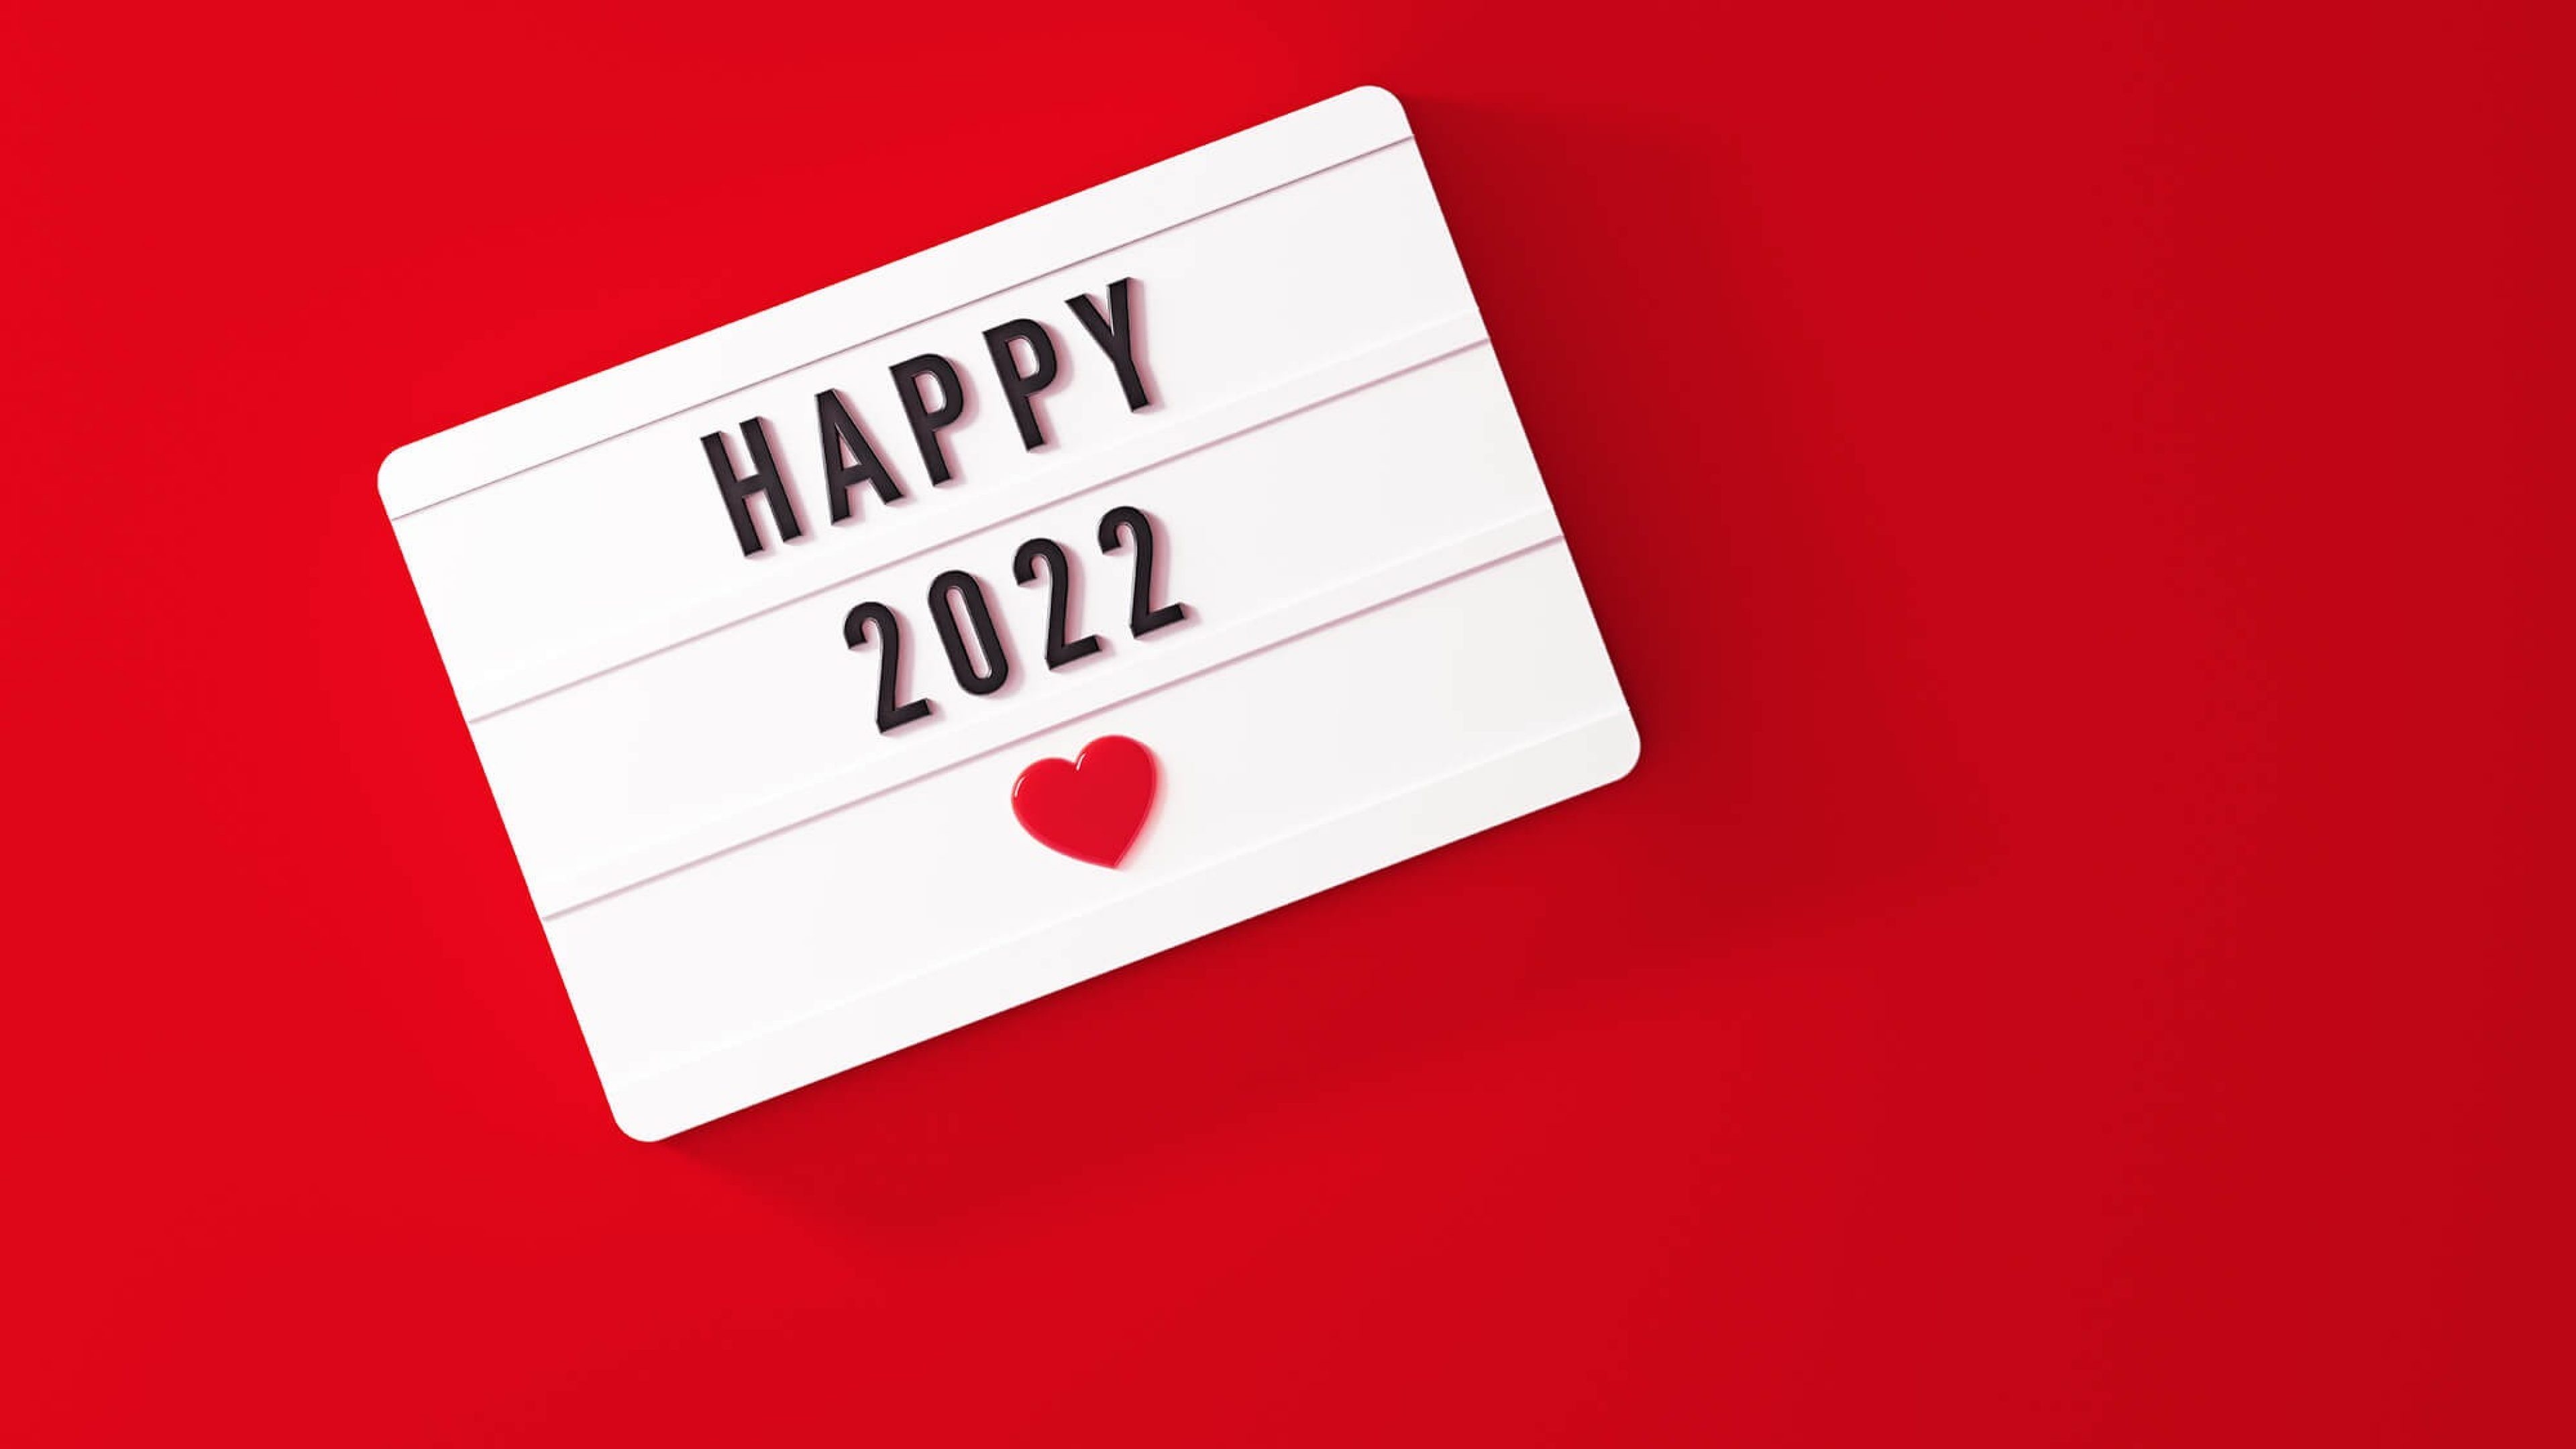 Lightbox mit "Happy 2022", rotem Herz und rotem Hintergrund